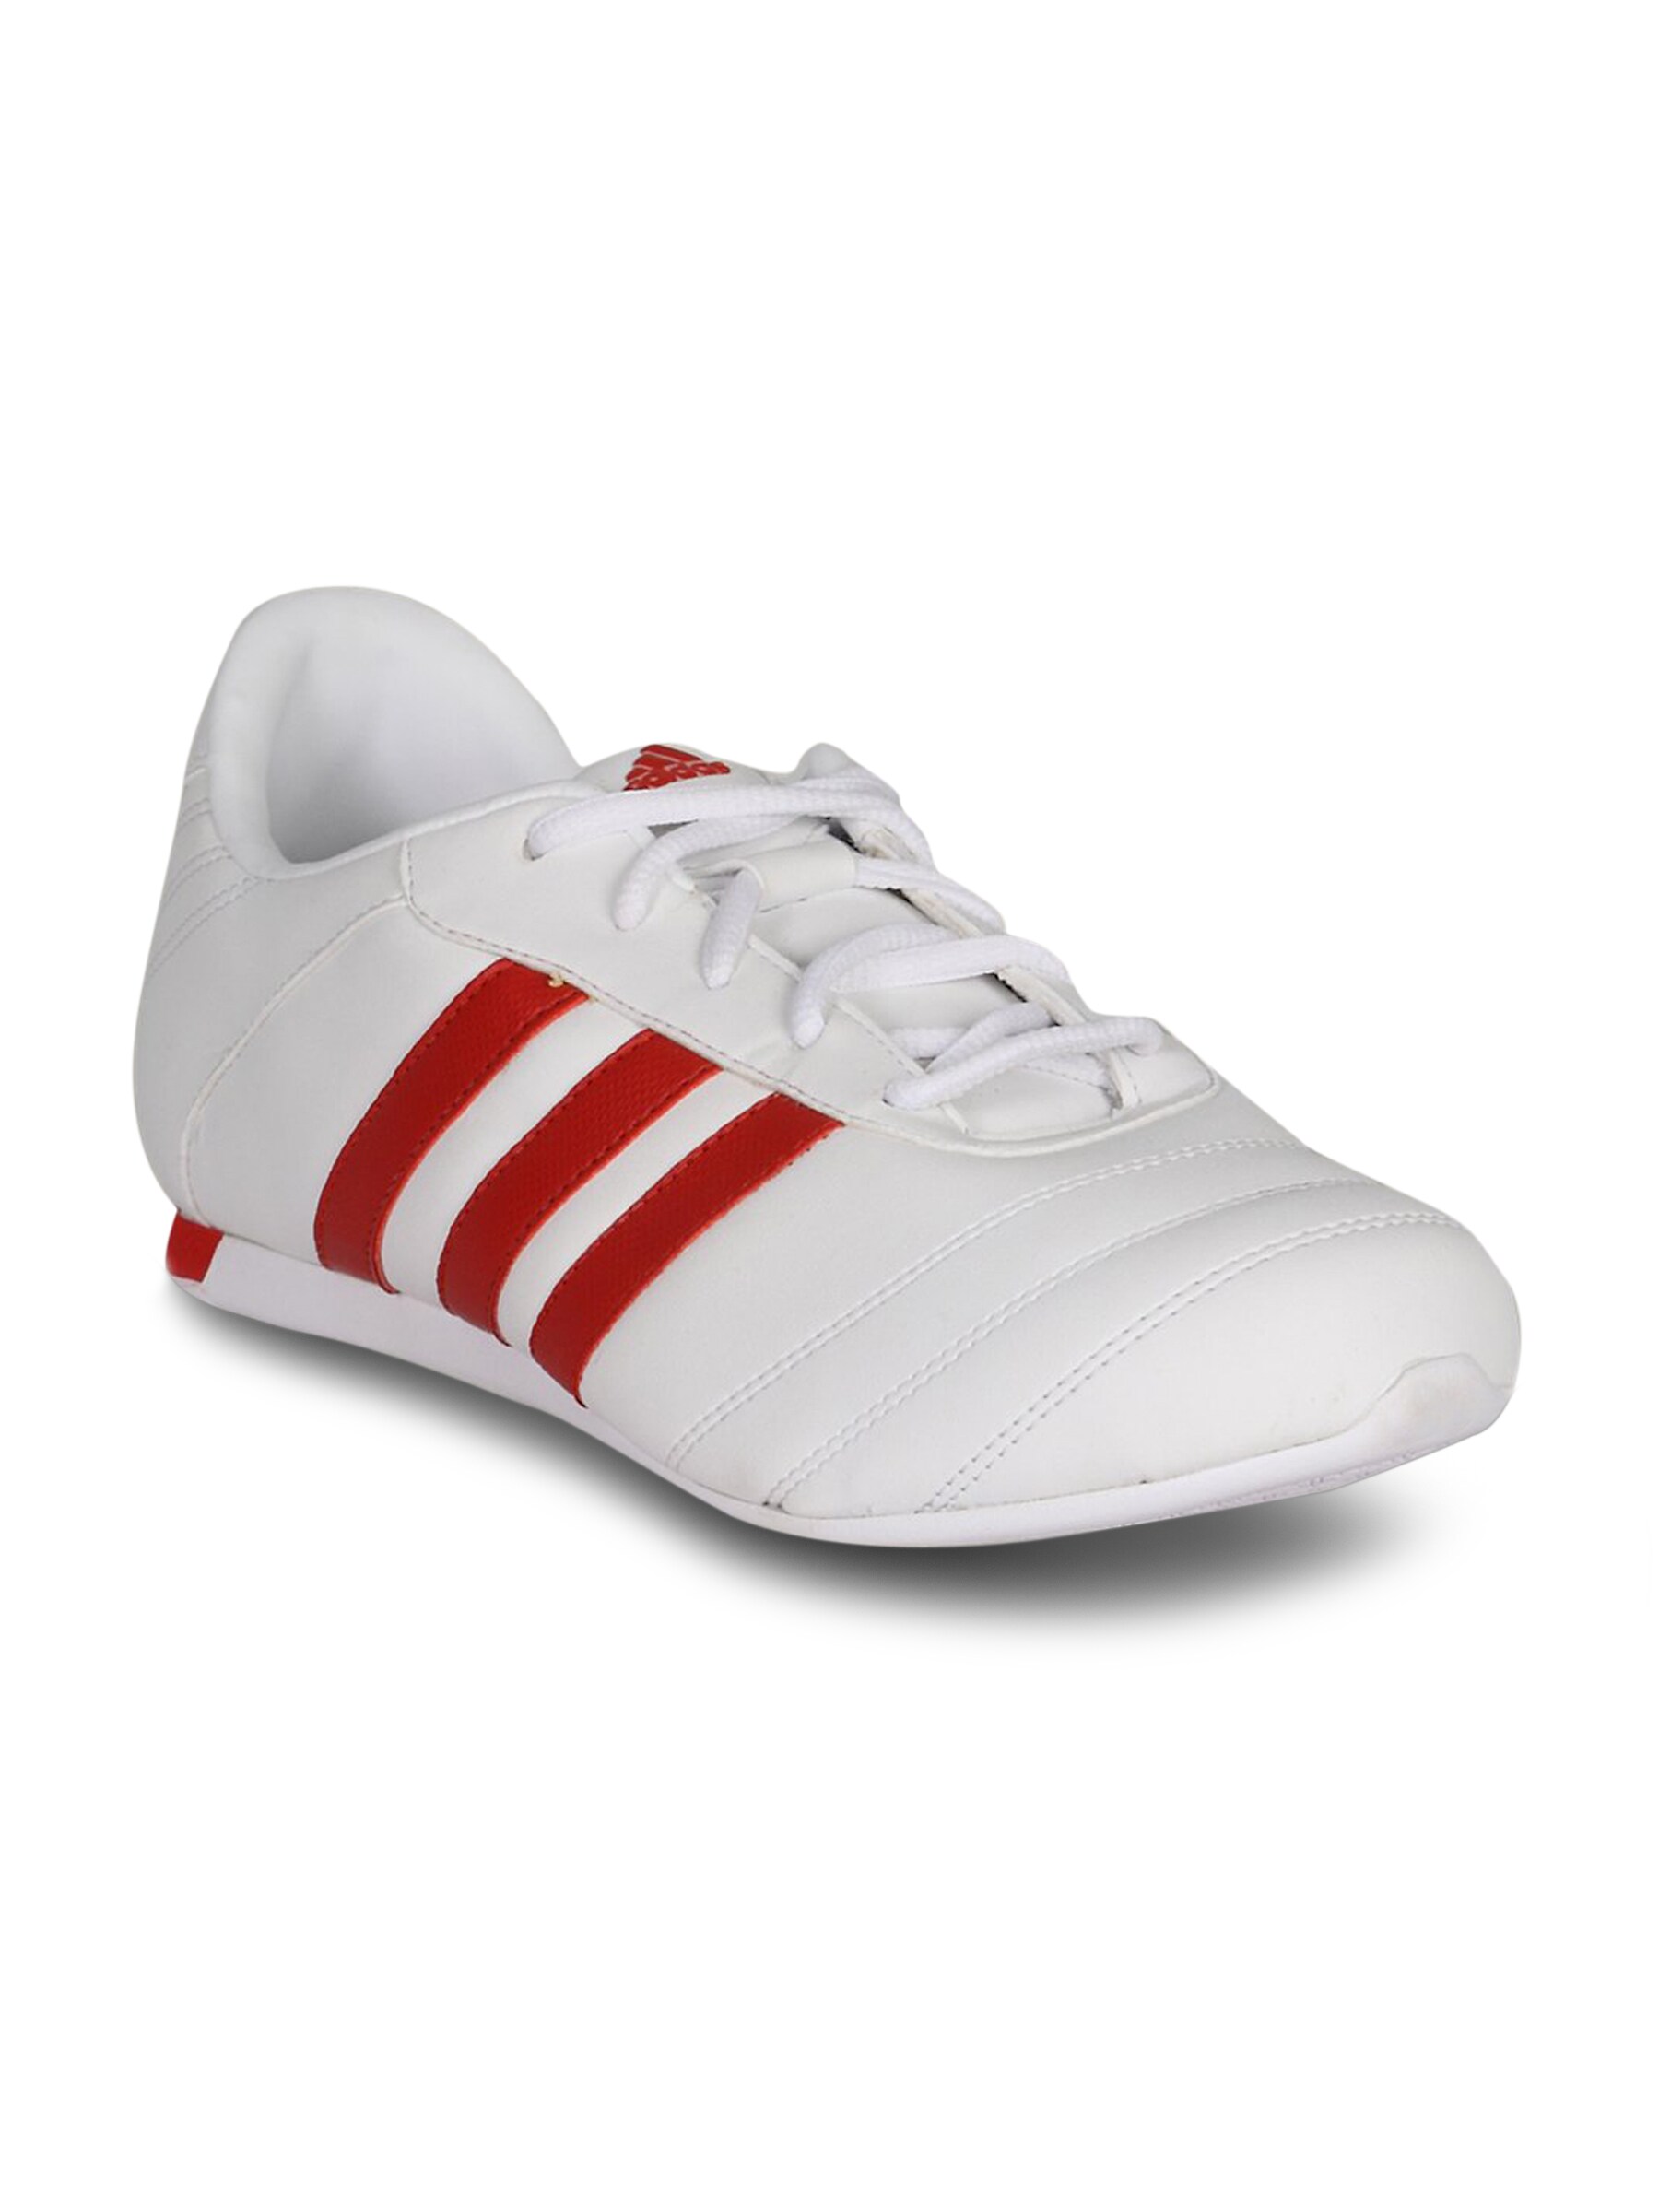 ADIDAS Men's Adi Ultra Low White Red Shoe